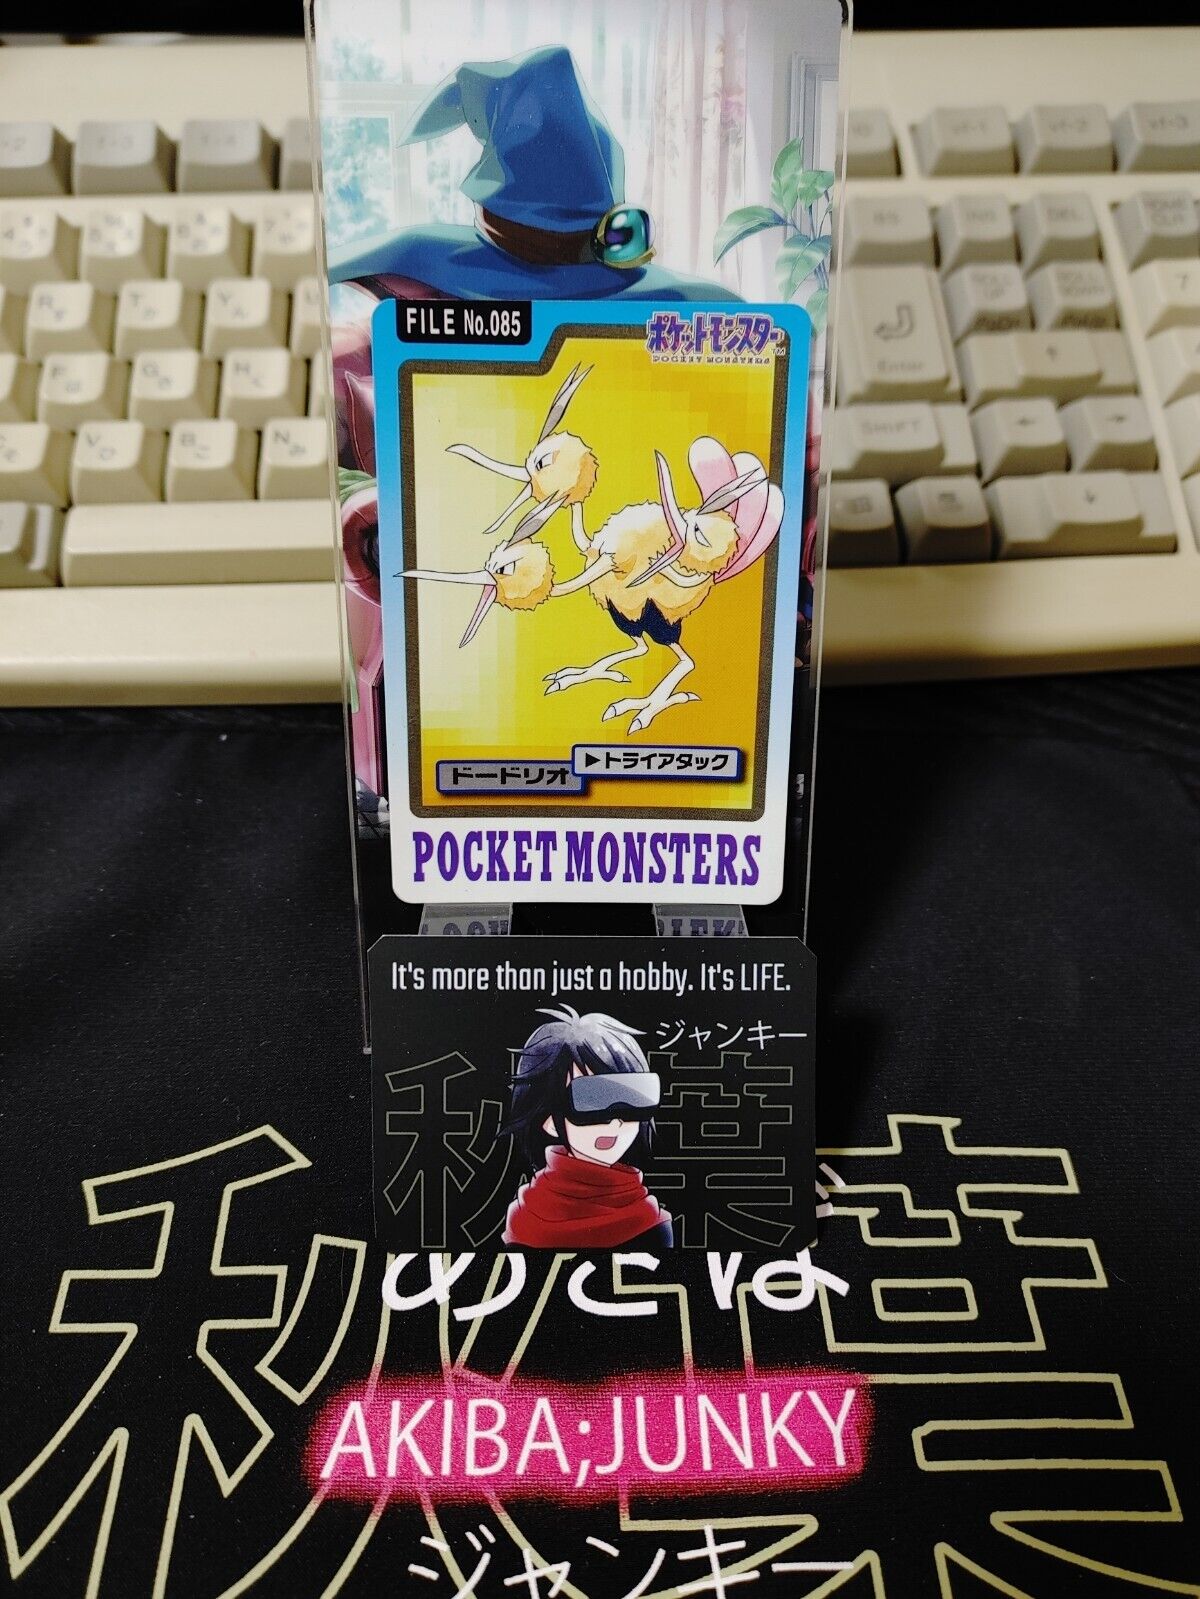 Pokemon Bandai Dodrio Carddass Card #085 Japanese Retro Japan Rare Item